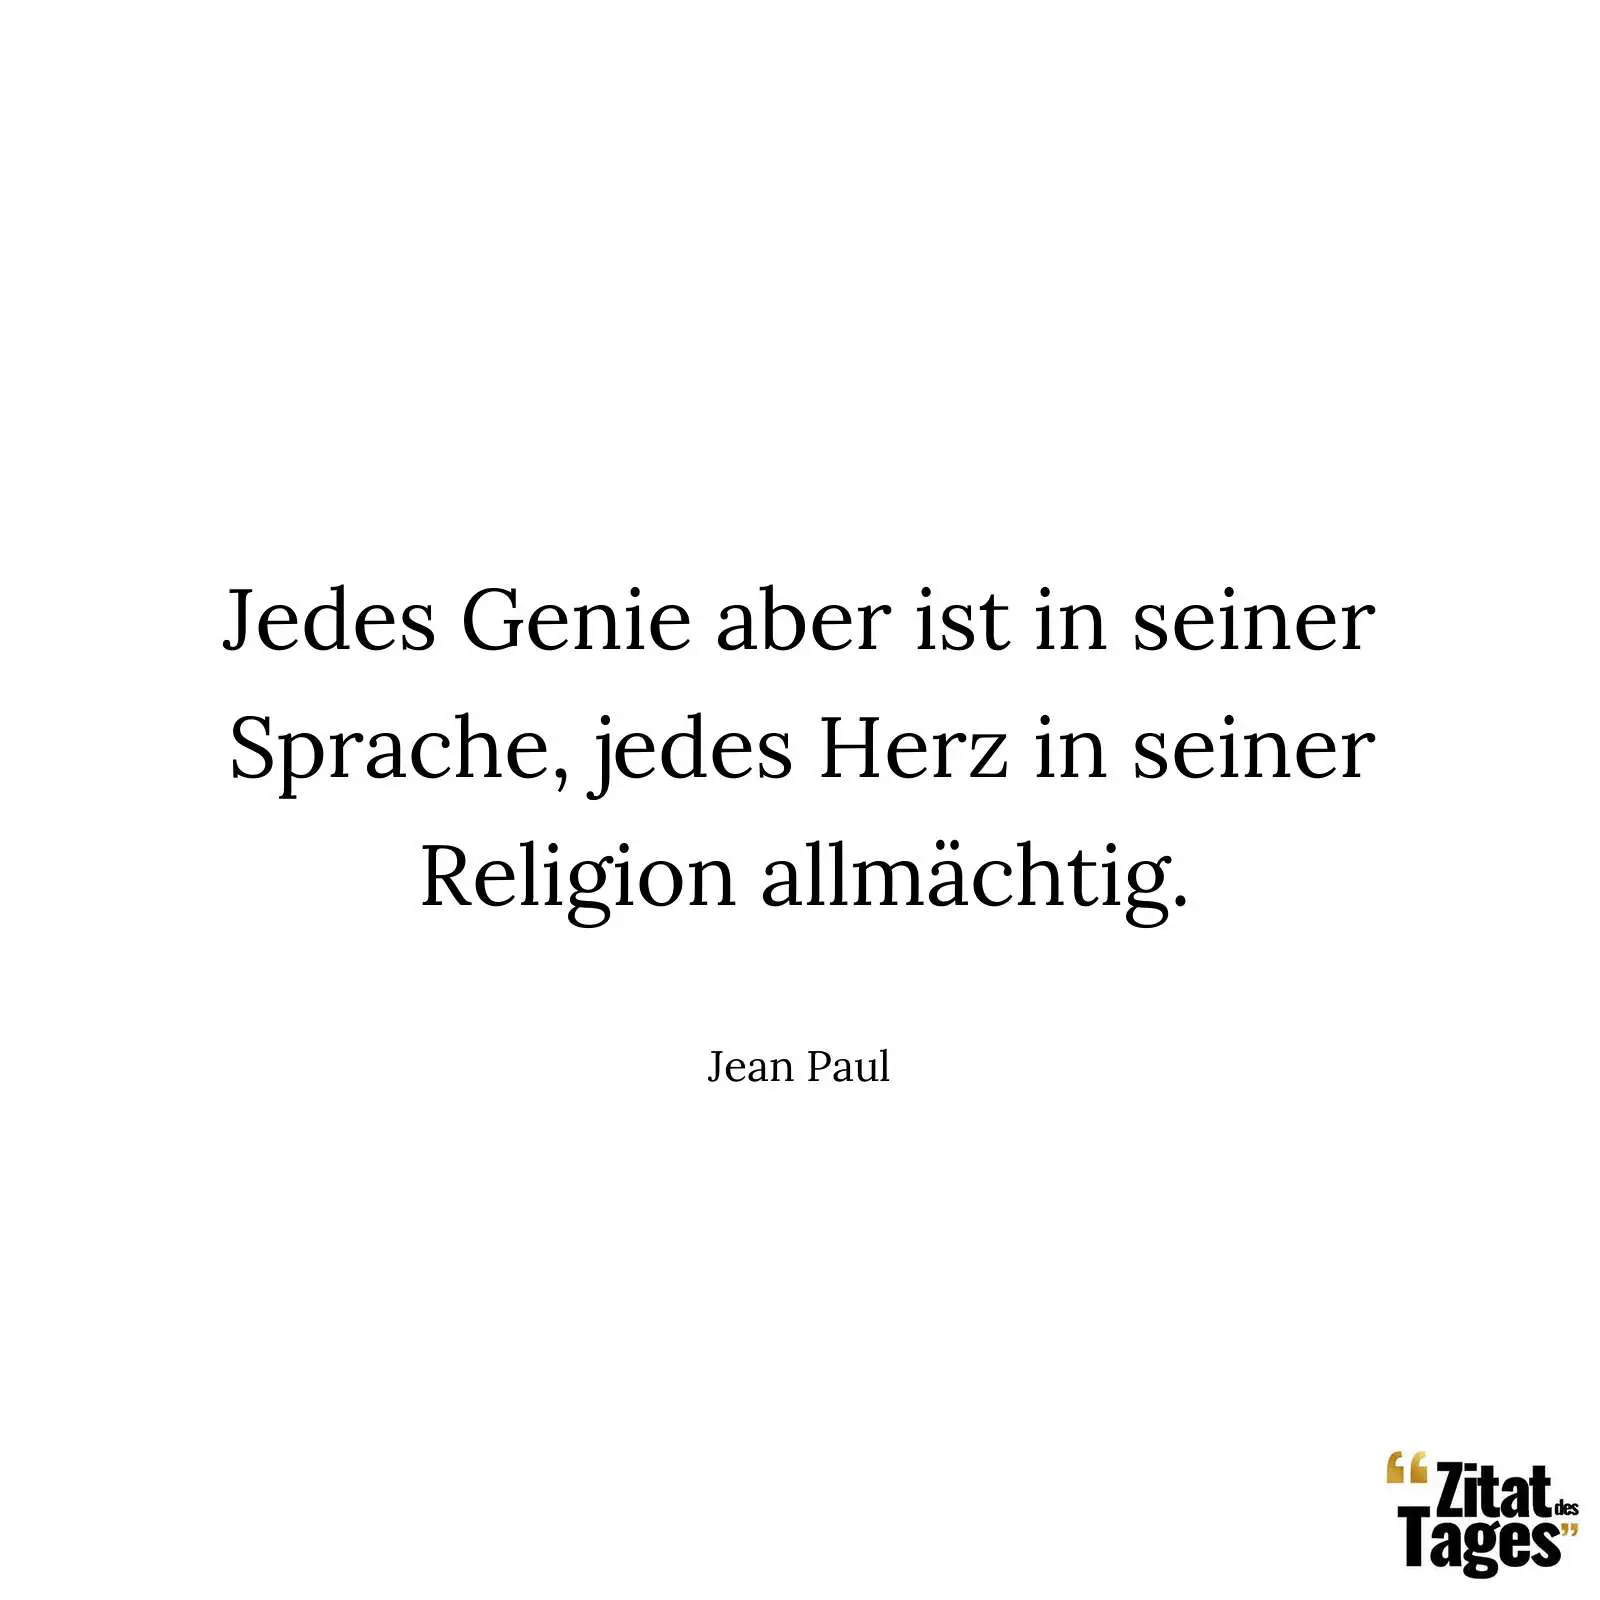 Jedes Genie aber ist in seiner Sprache, jedes Herz in seiner Religion allmächtig. - Jean Paul